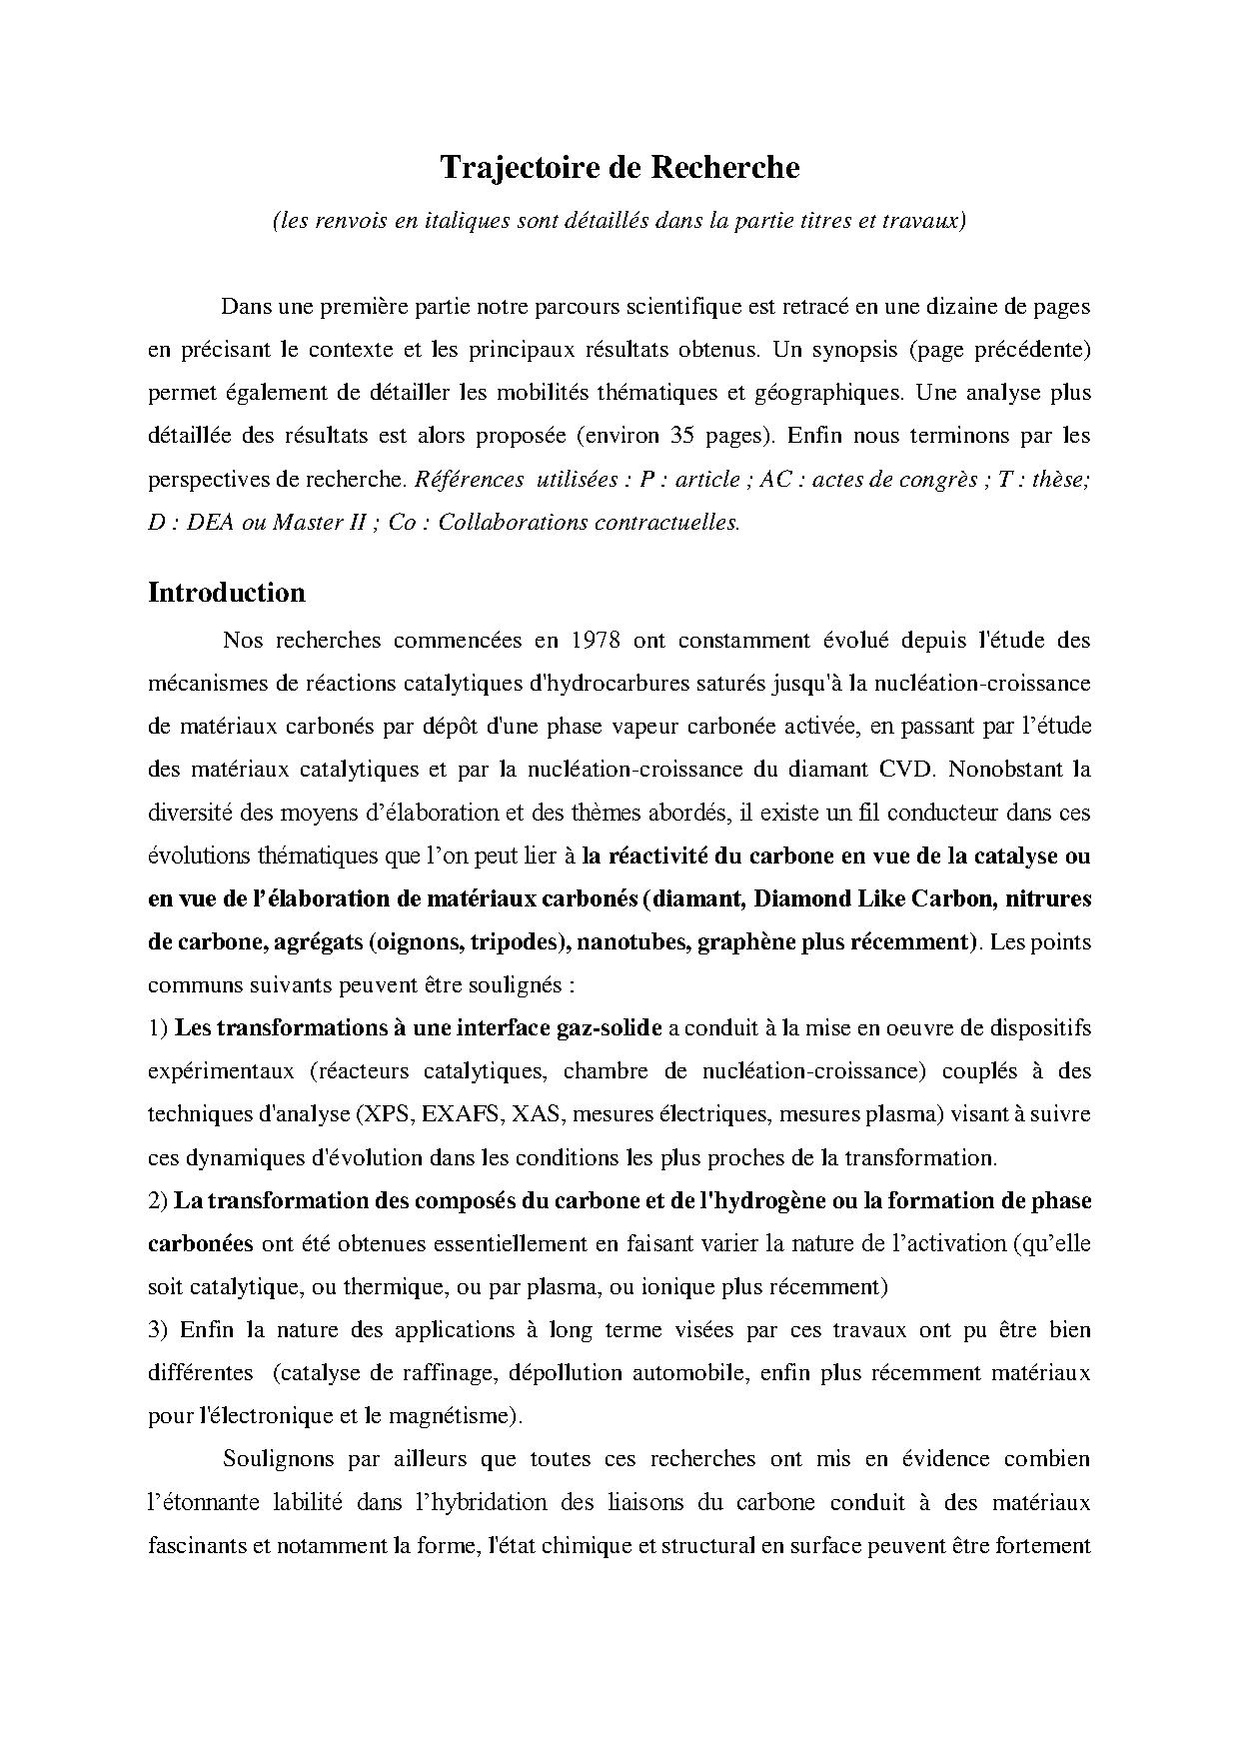 Trajectoire de recherche- Francois Le Normand-Wiki-2016.pdf